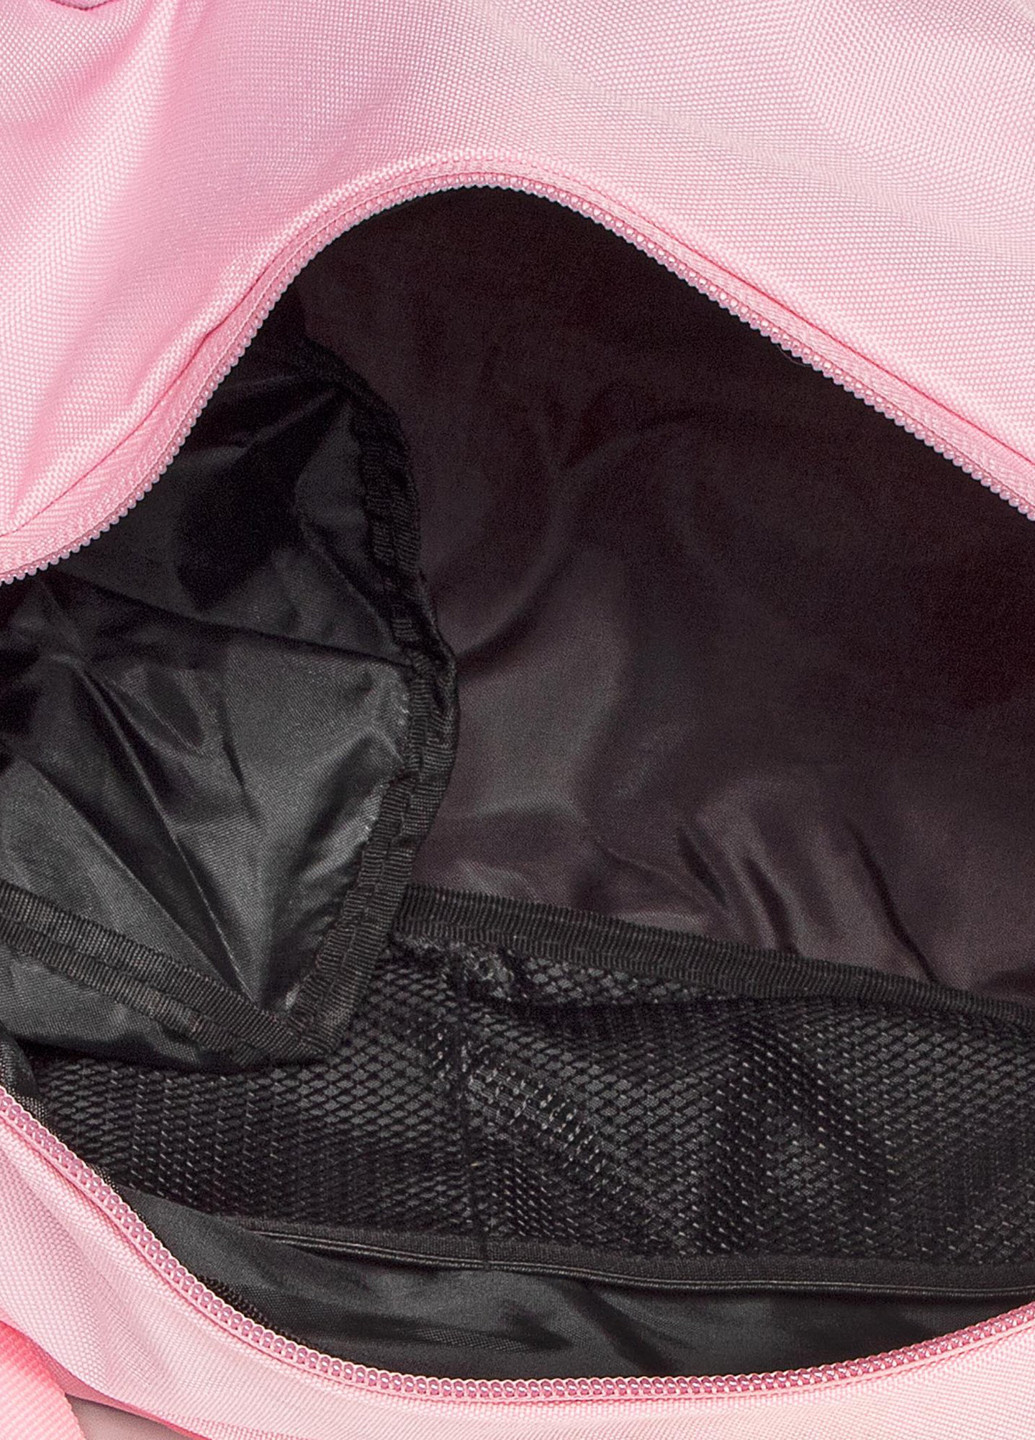 Спортивні сумки BST-S-101-36-04 Sprandi логотип розовая спортивная